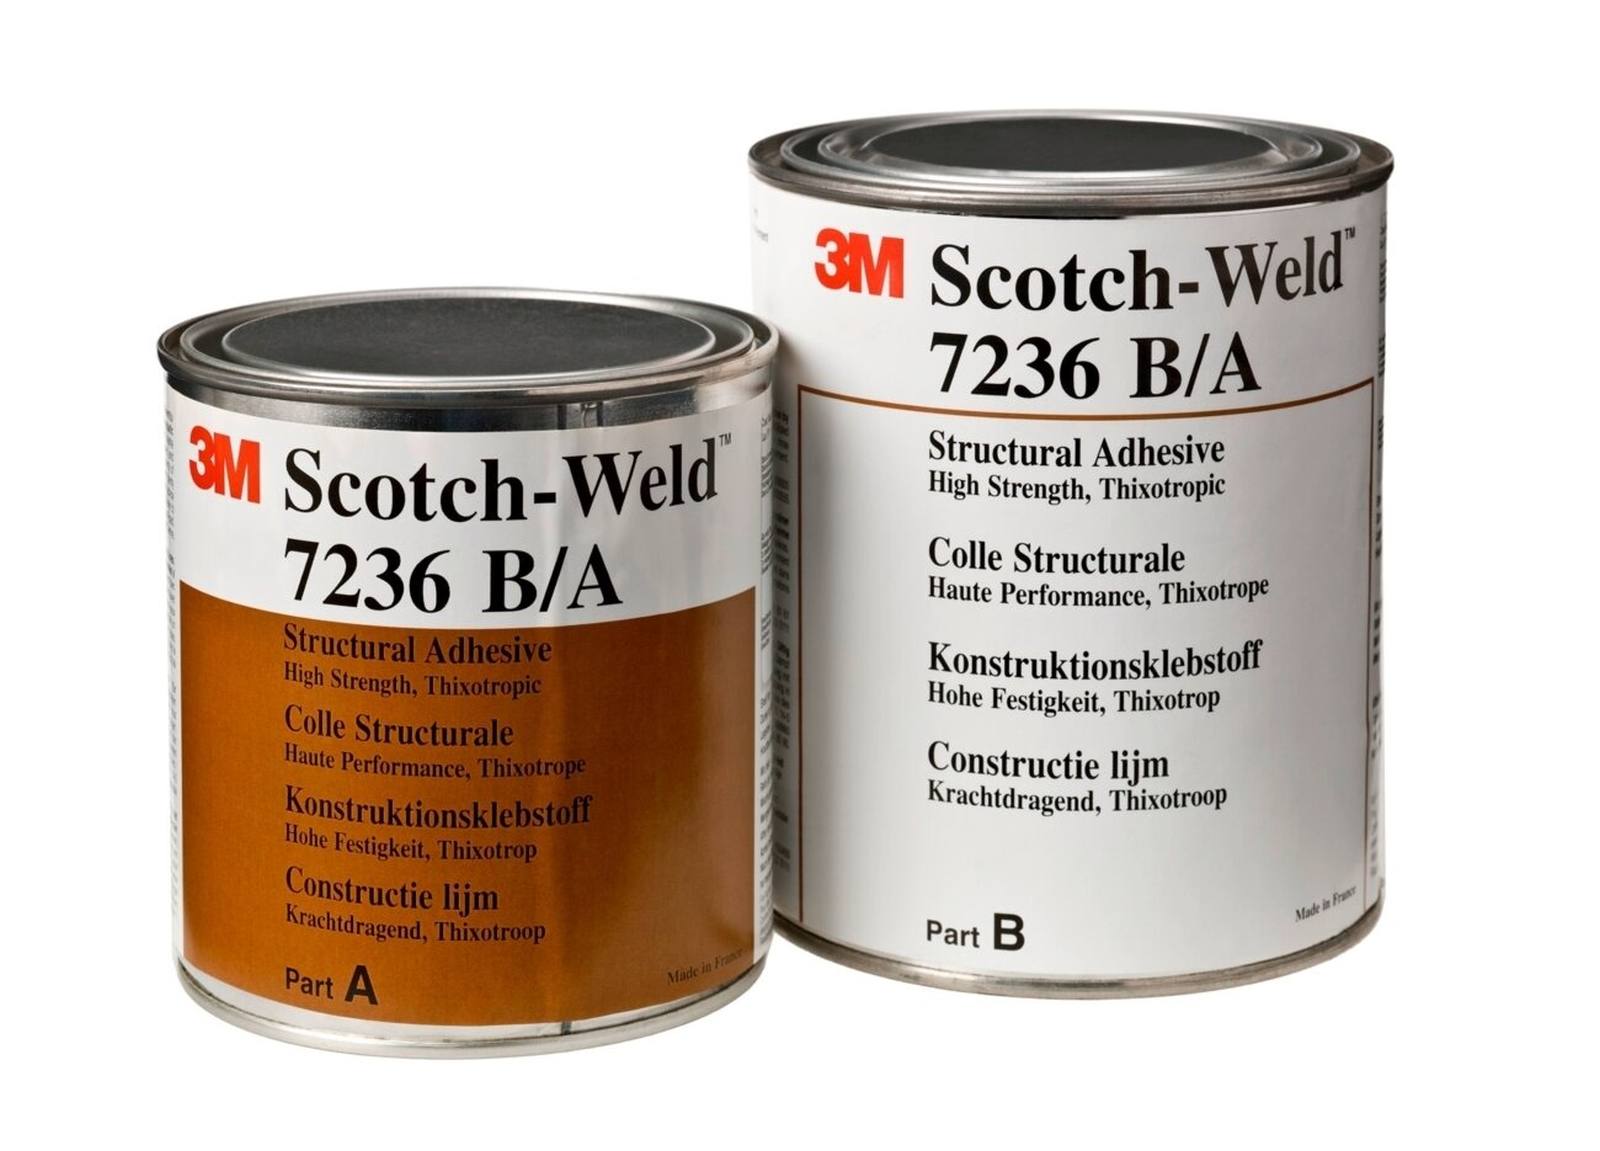 3M Scotch-Weld 2-komponenttinen polyuretaanipohjainen rakennusliima 3520 B/A, läpinäkyvä, 2 l:n pakkaus.